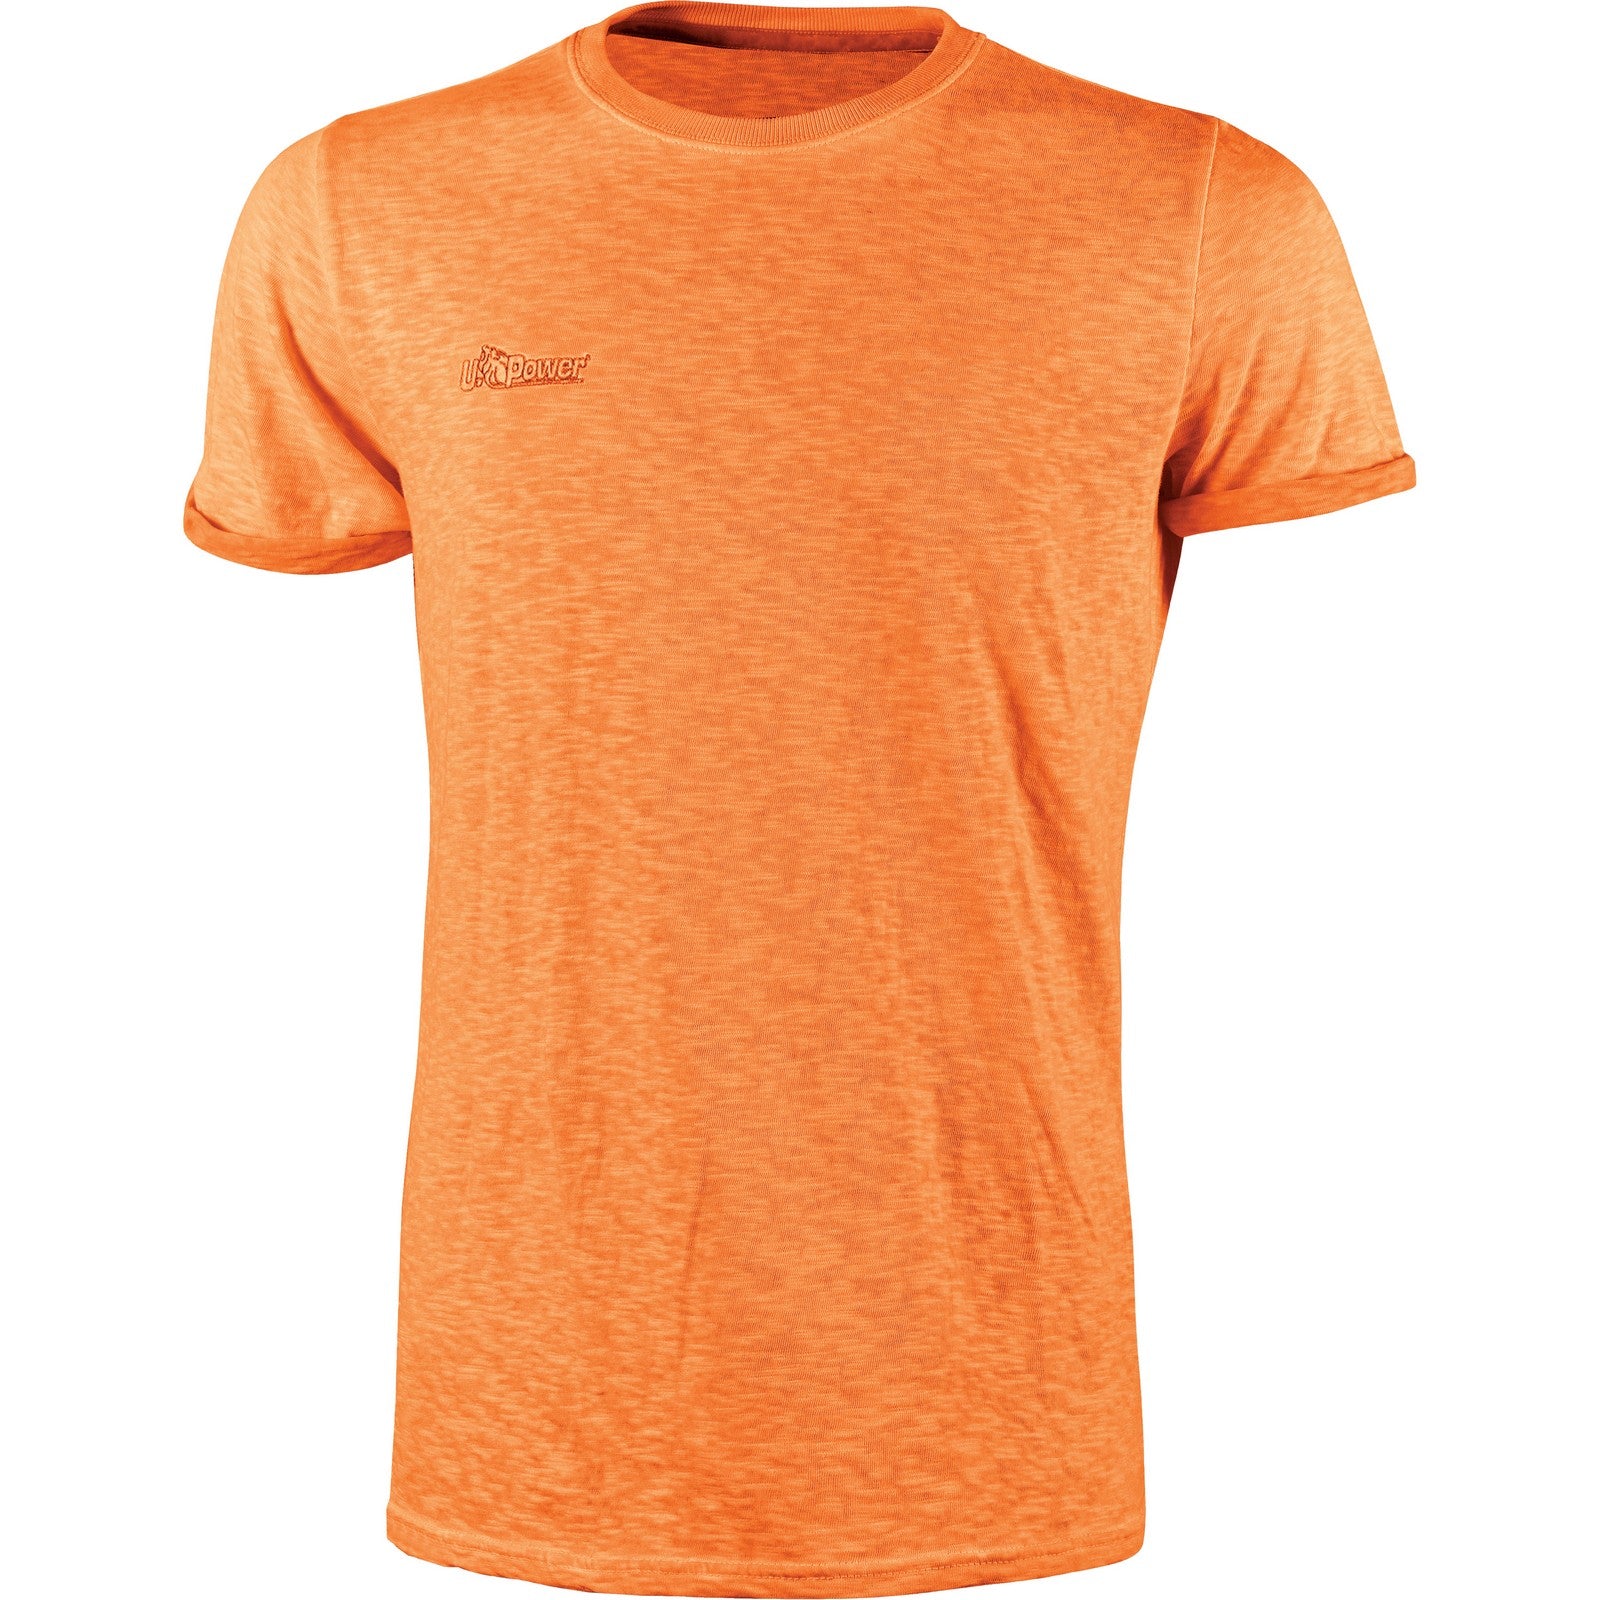 U-Power T-Shirt Fluo Arancio  tagliaXL